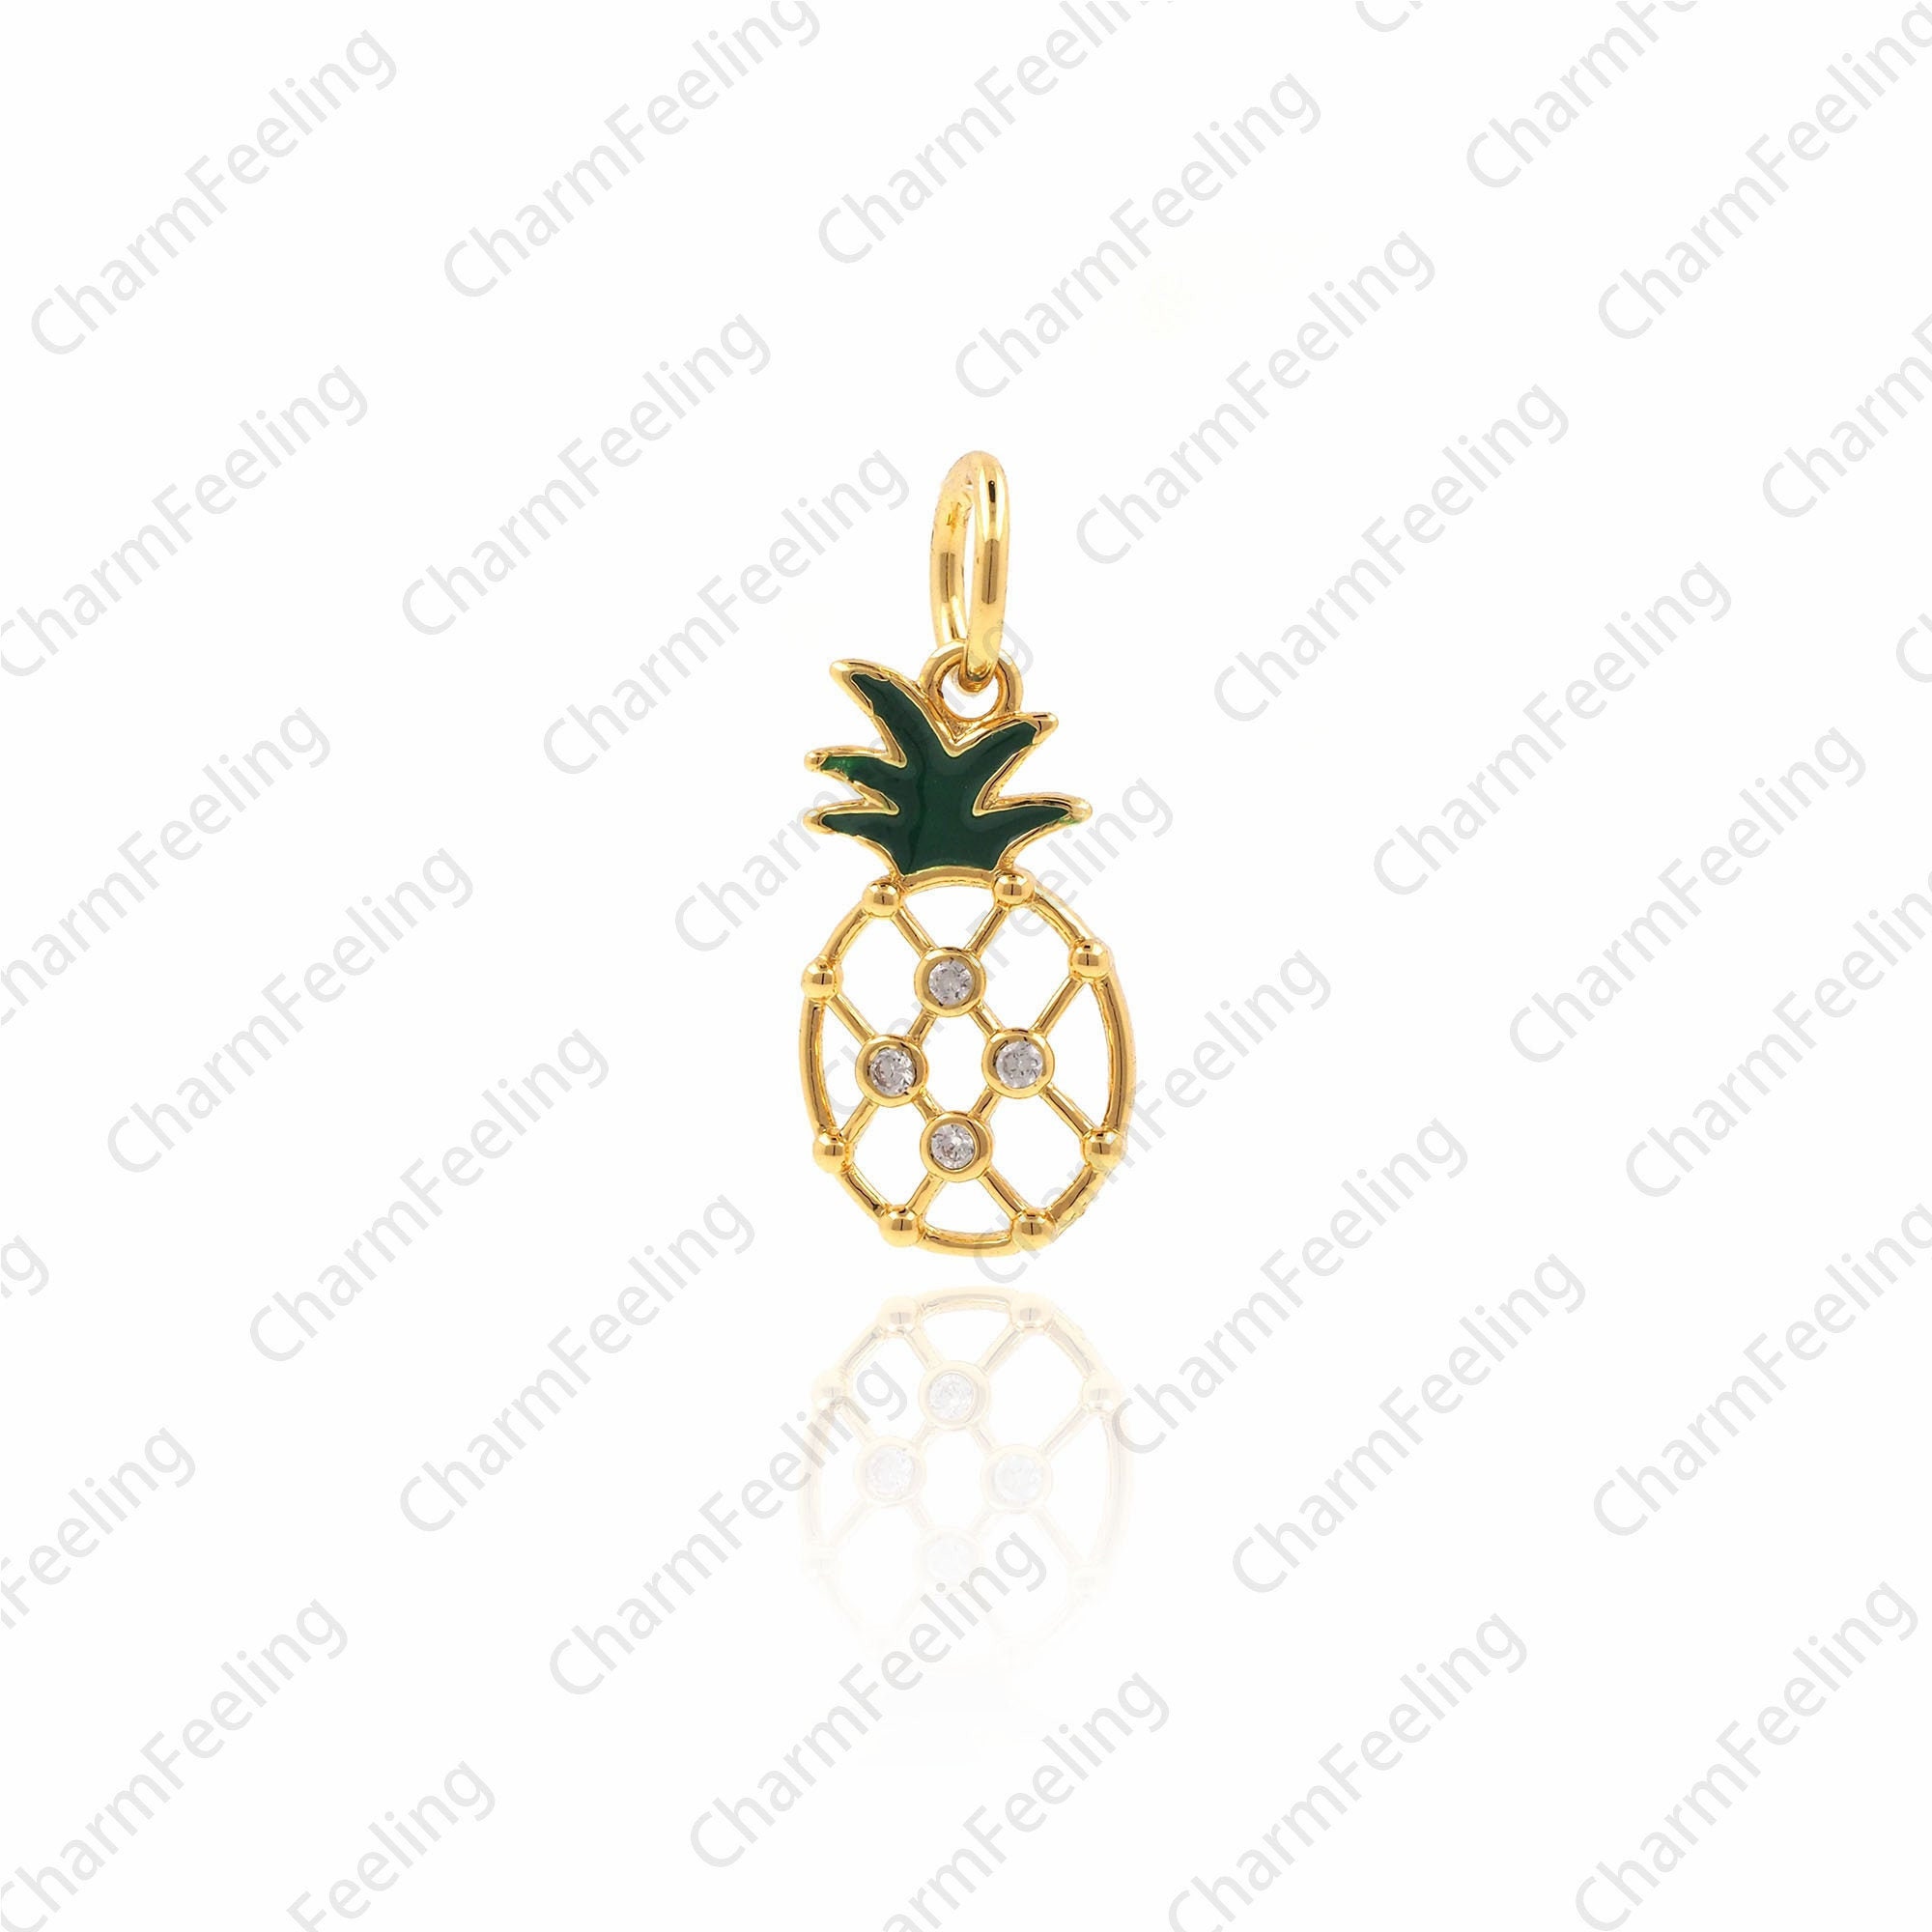 Micro Pave Cz Pineapple Charm, Pendant, Necklace 16.3x6.9x1.8mm 1Pcs